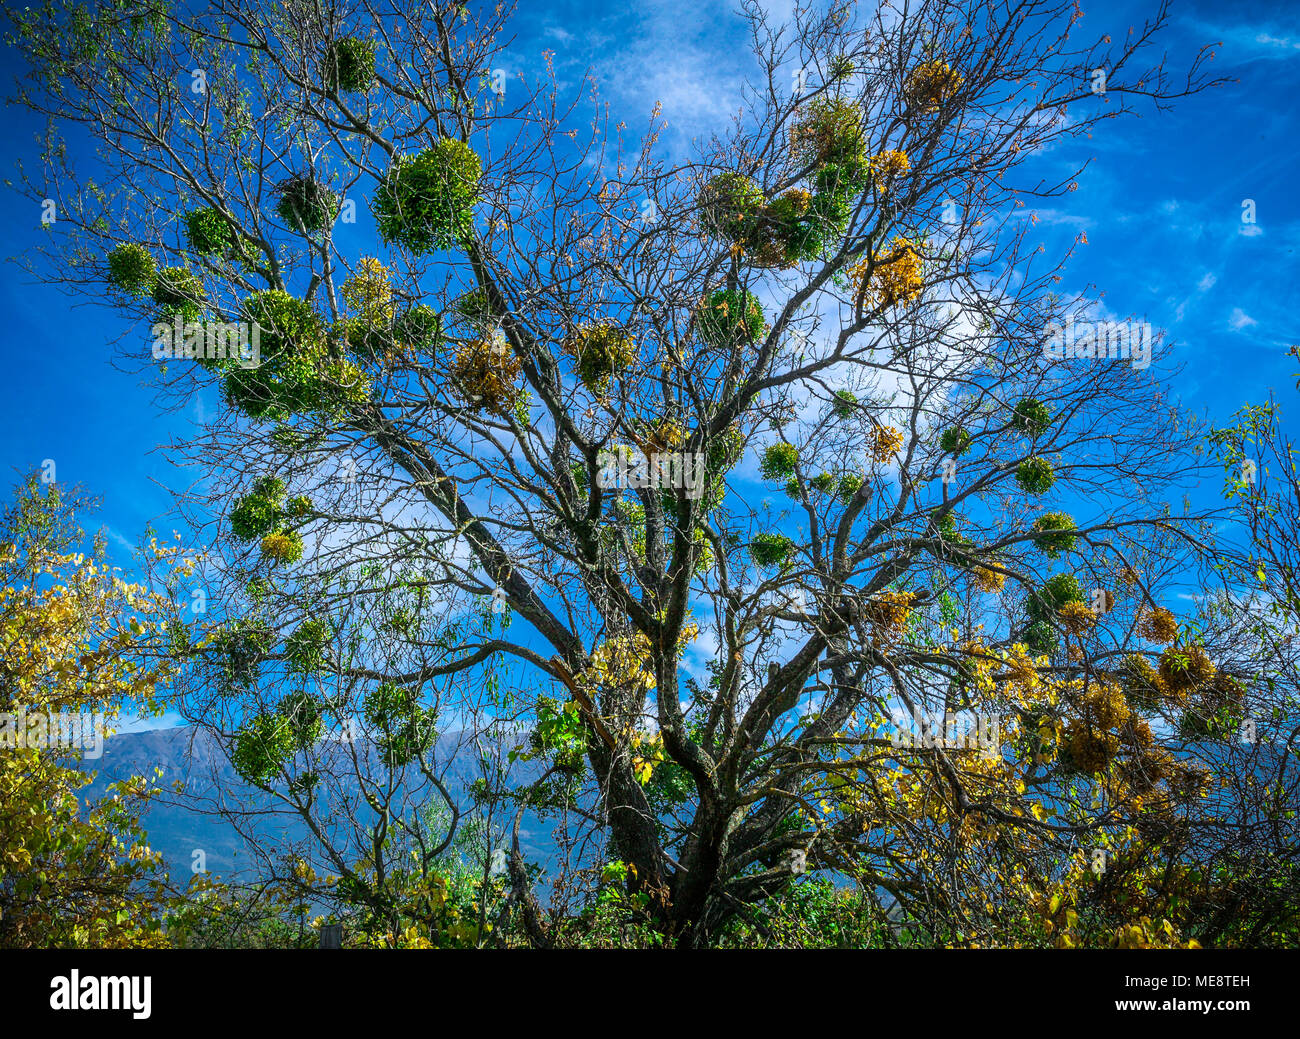 Grappoli di piante mistletoe album visco su un albero, in ambiente naturale. Foto Stock